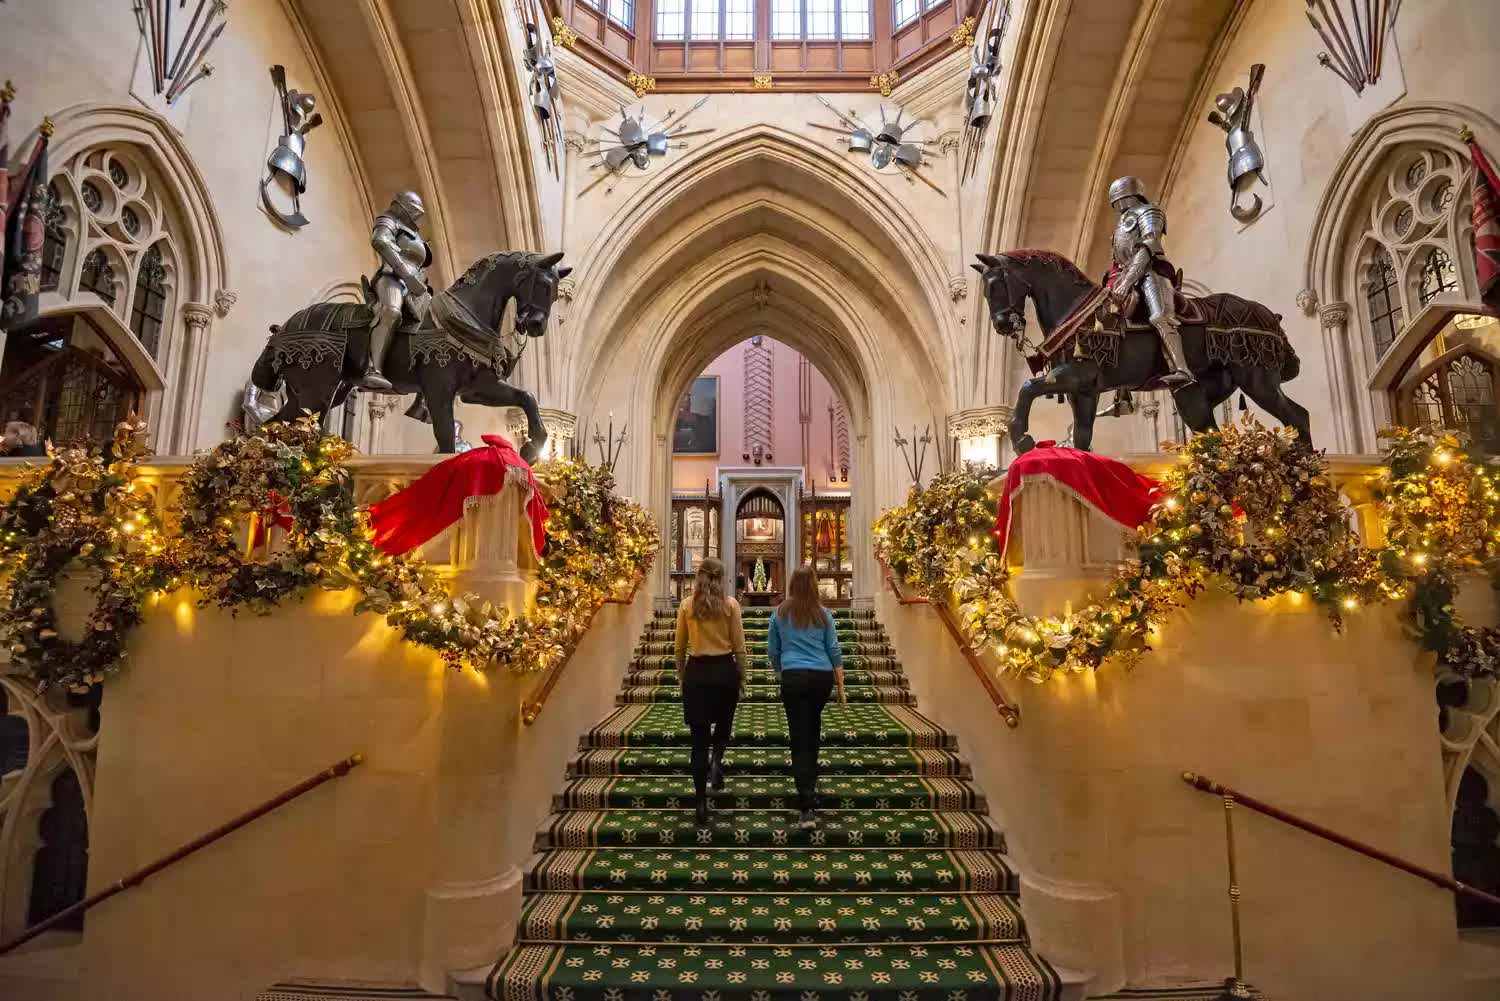 Lâu đài Windsor trang hoàng rực rỡ đón Giáng sinh- Ảnh 4.